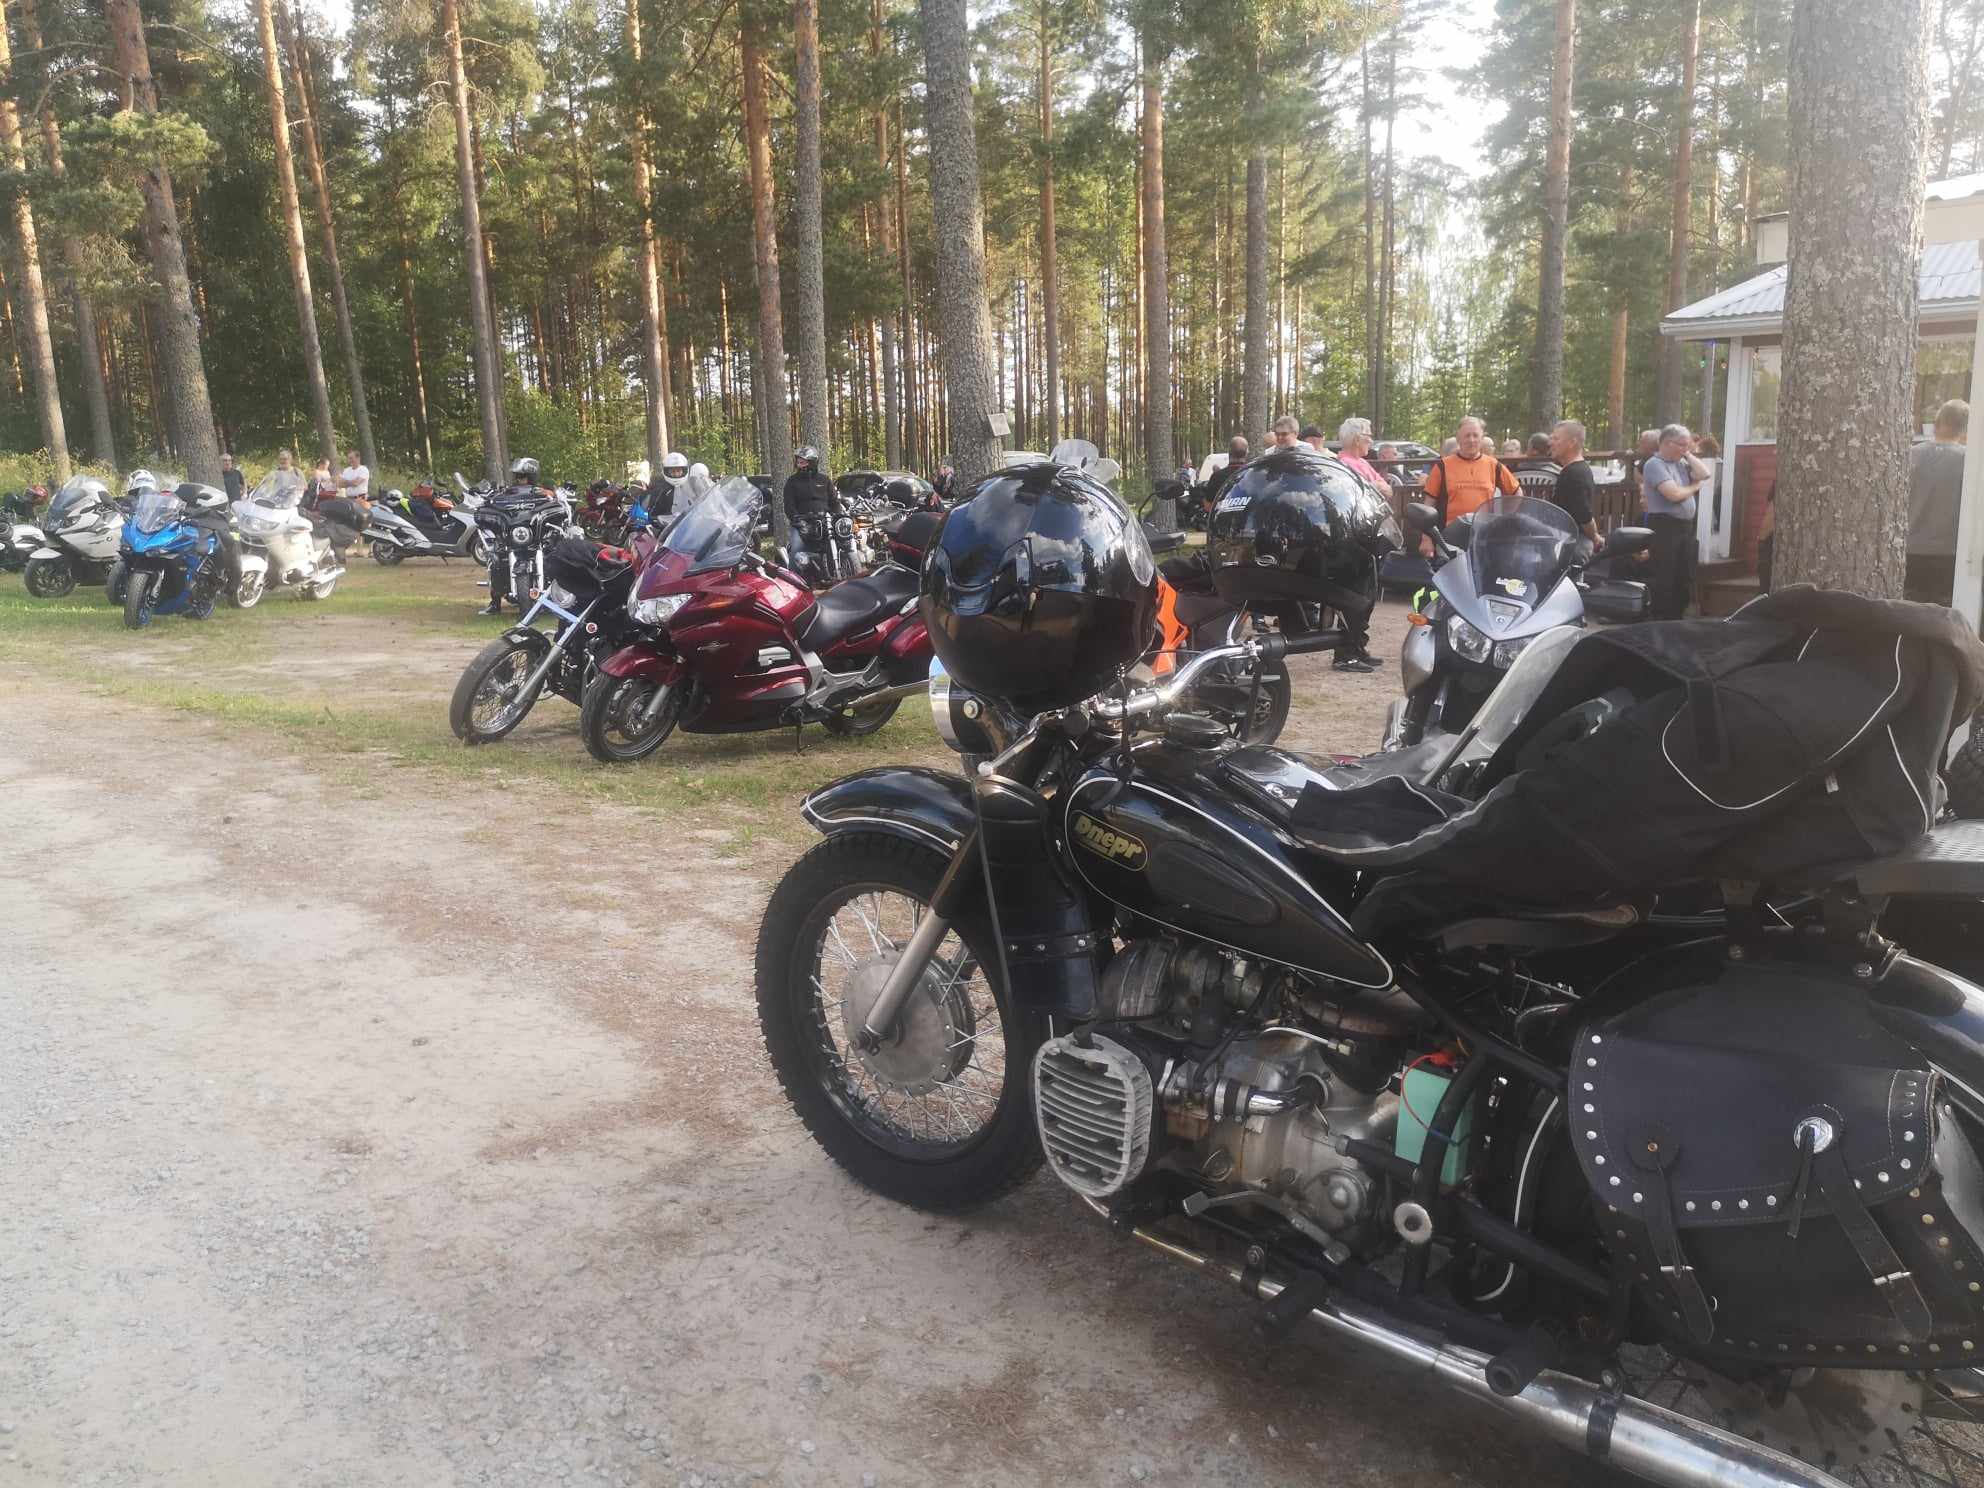 Kalevi Mäkitalon musta sivuvaunullinen Dnepr etualalla. Moottoripyöriä oli parkkeerattu Rantamajan molemmin puolin runsaslukuisesti.